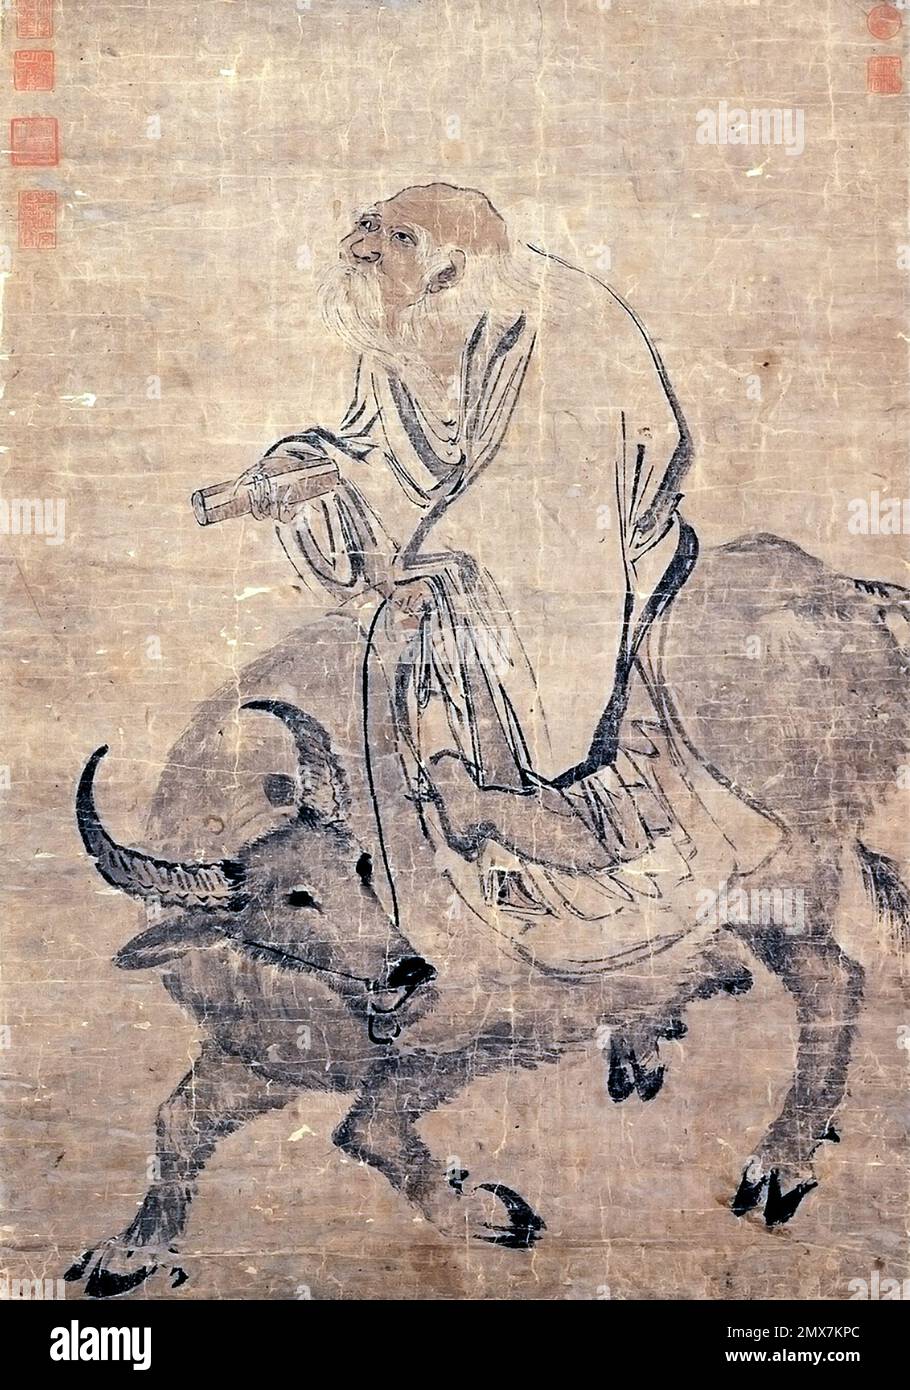 Tzu Lao. Illustration de l'ancien philosophe taoïste chinois, Lao Tzu ( Laozi ) Riding an Ox par Zhang lu (1464–1538), Scroll, c. 1480-1538 Banque D'Images